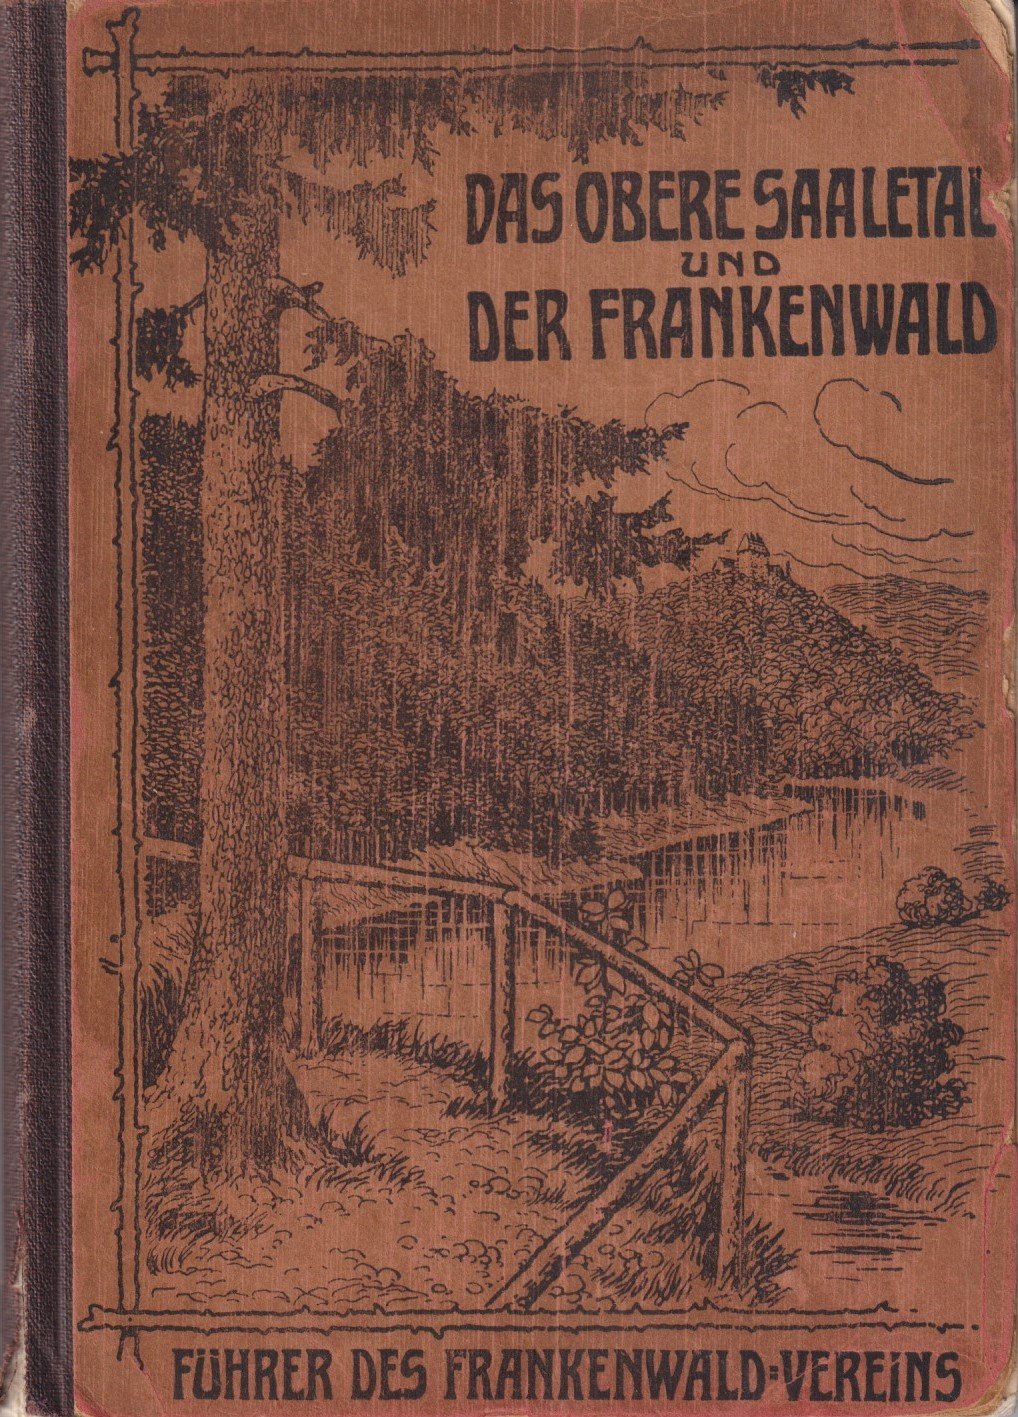 Wanderbuch des Frankenwald-Vereins. Das obere Saaletal und der Frankenwald (Archiv SAXONIA-FREIBERG-STIFTUNG CC BY-NC-SA)